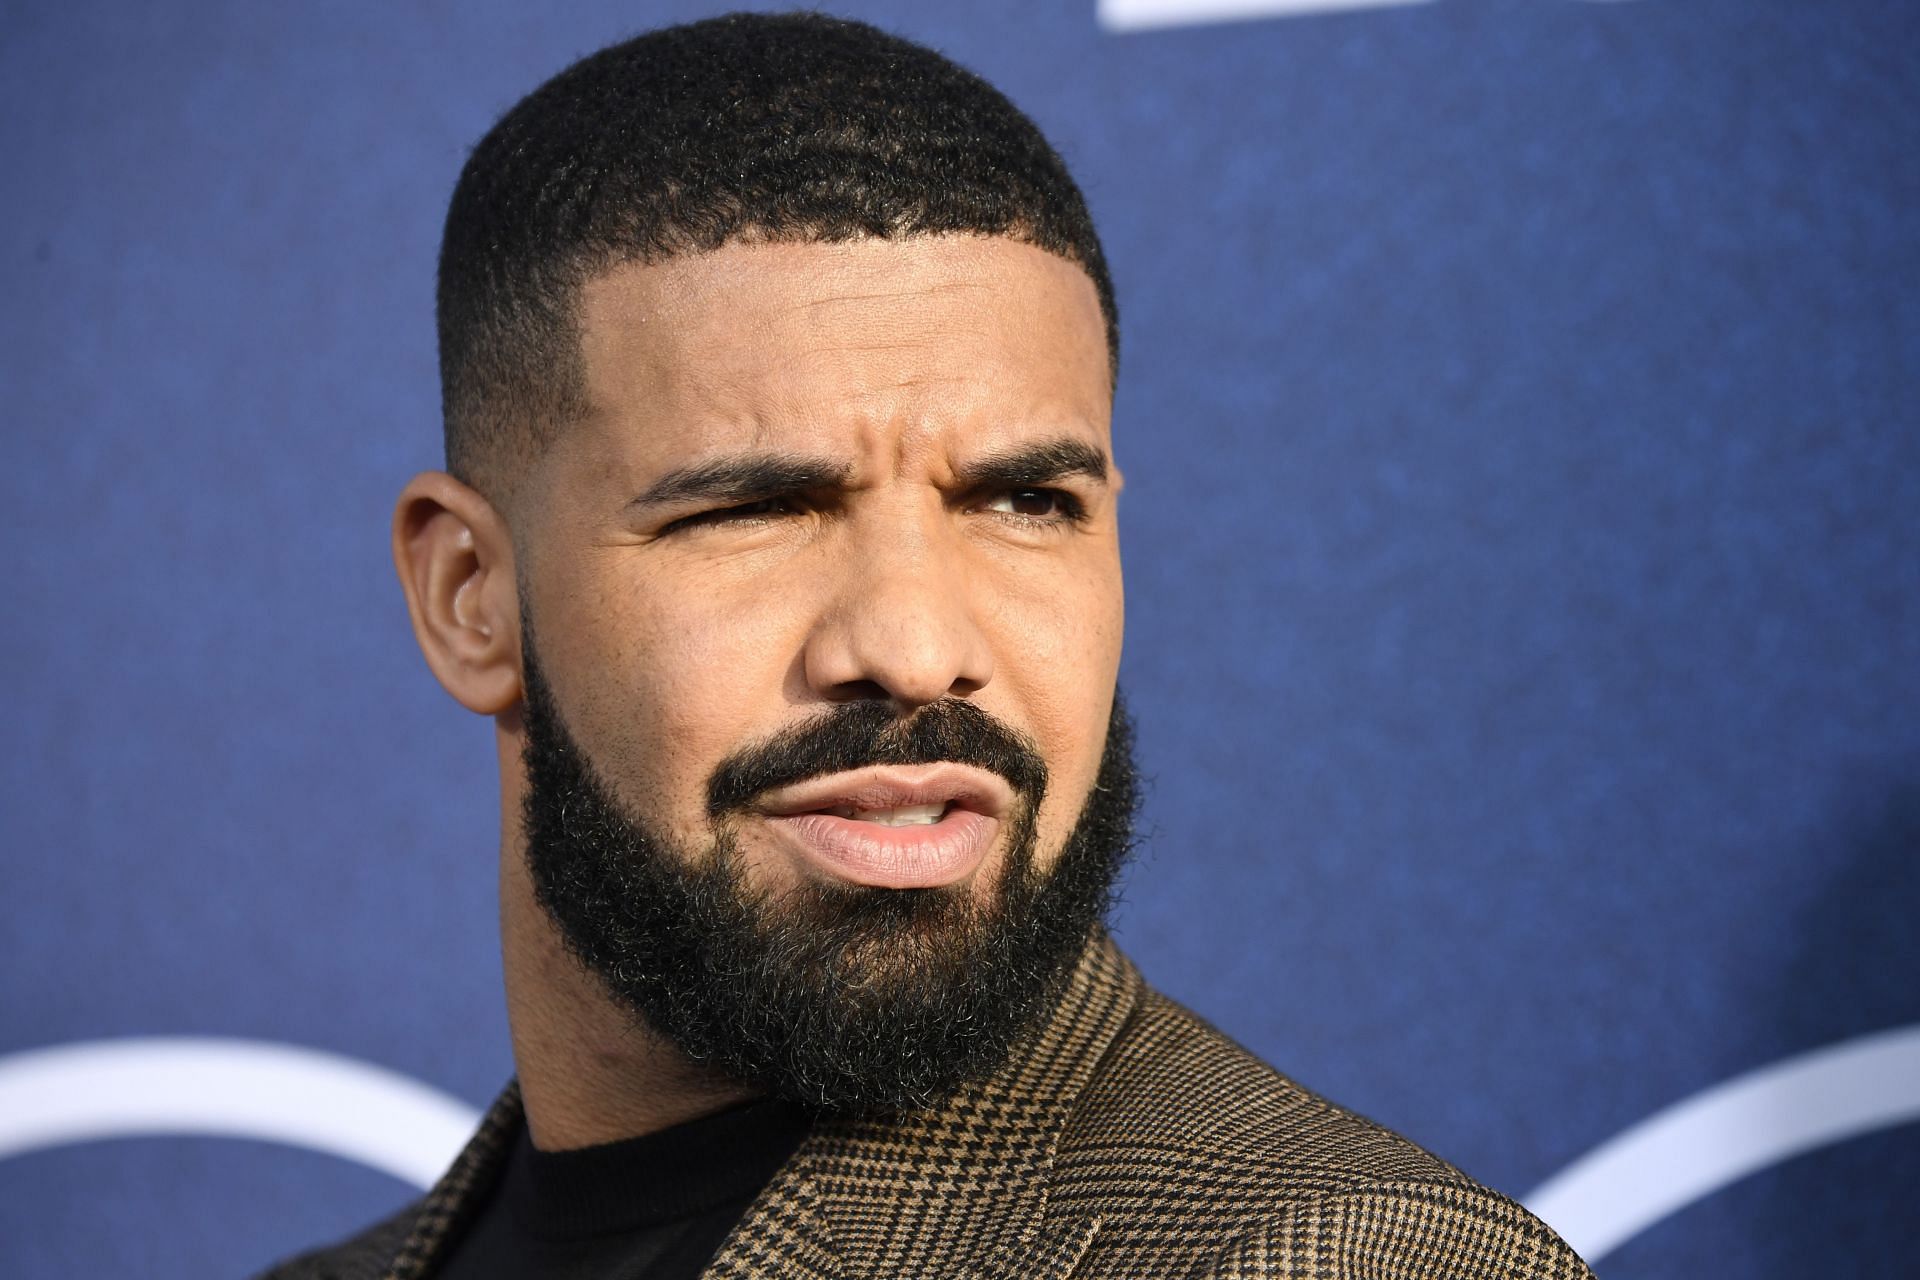 Drake attends the LA Premiere Of HBO's "Euphoria" in 2019 (Image via Getty)